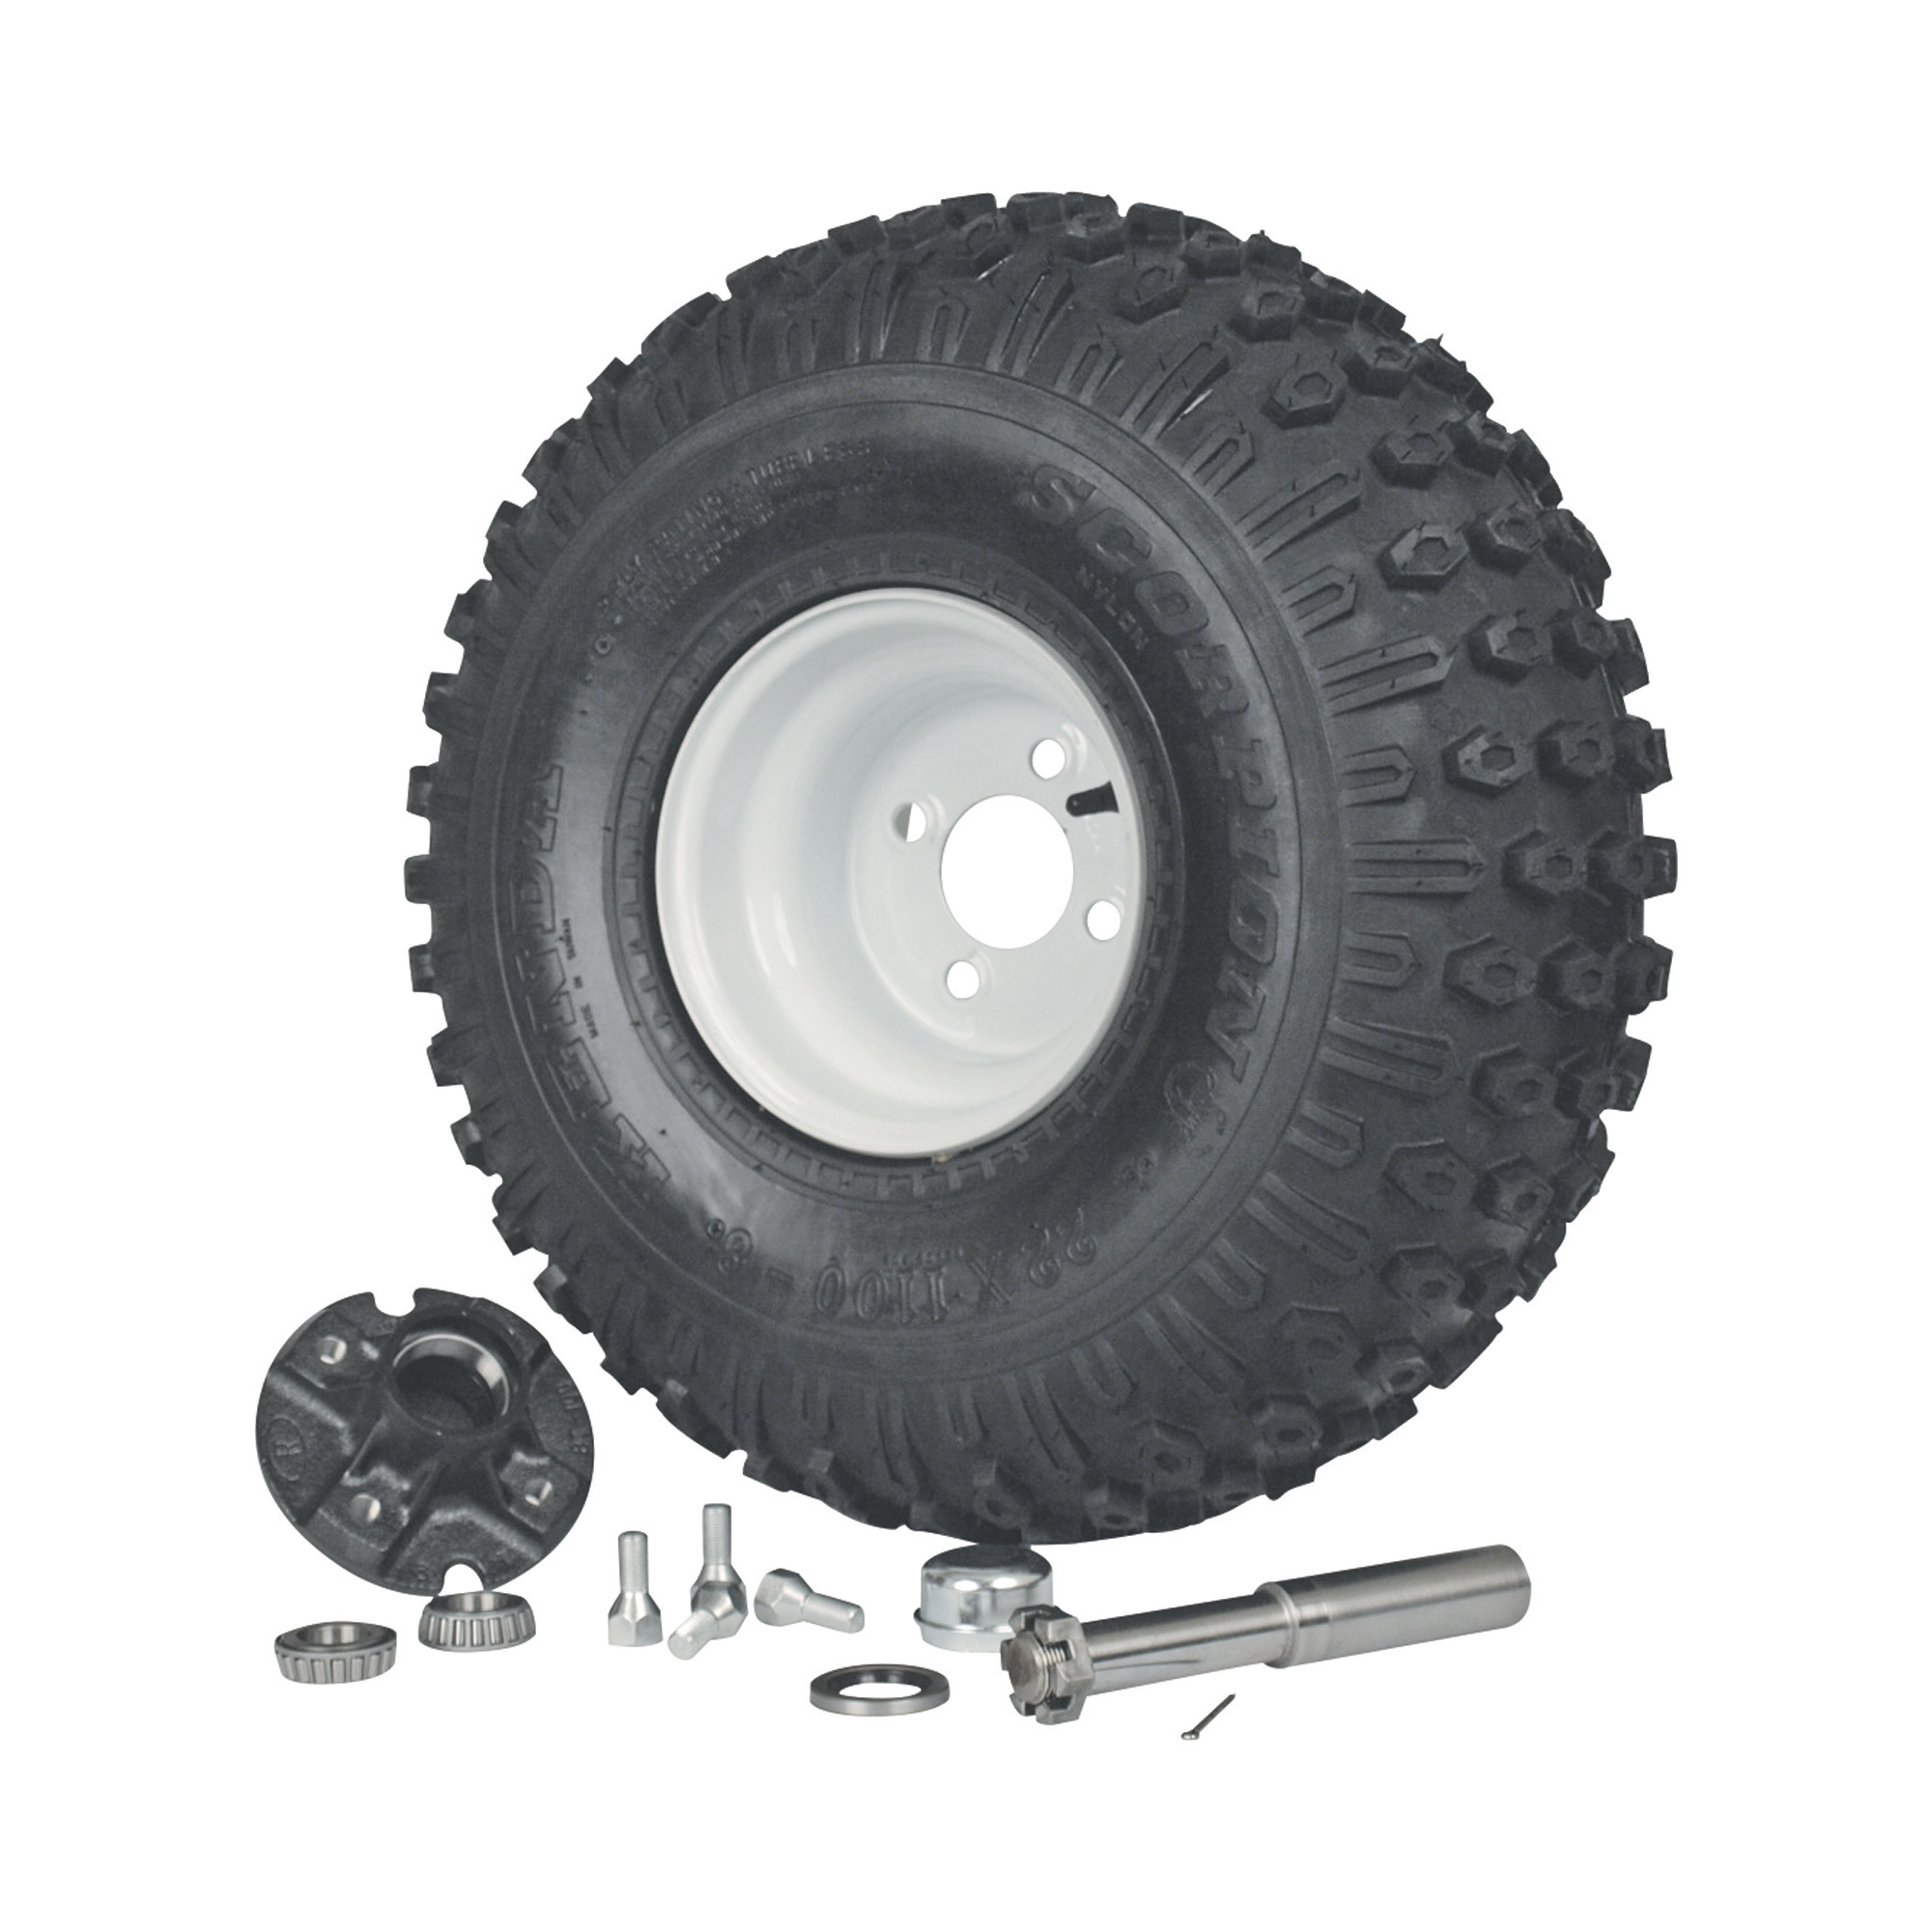 ATV Tire, Wheel, Hub and Axle Kit â 22 x 11 x 8Inch